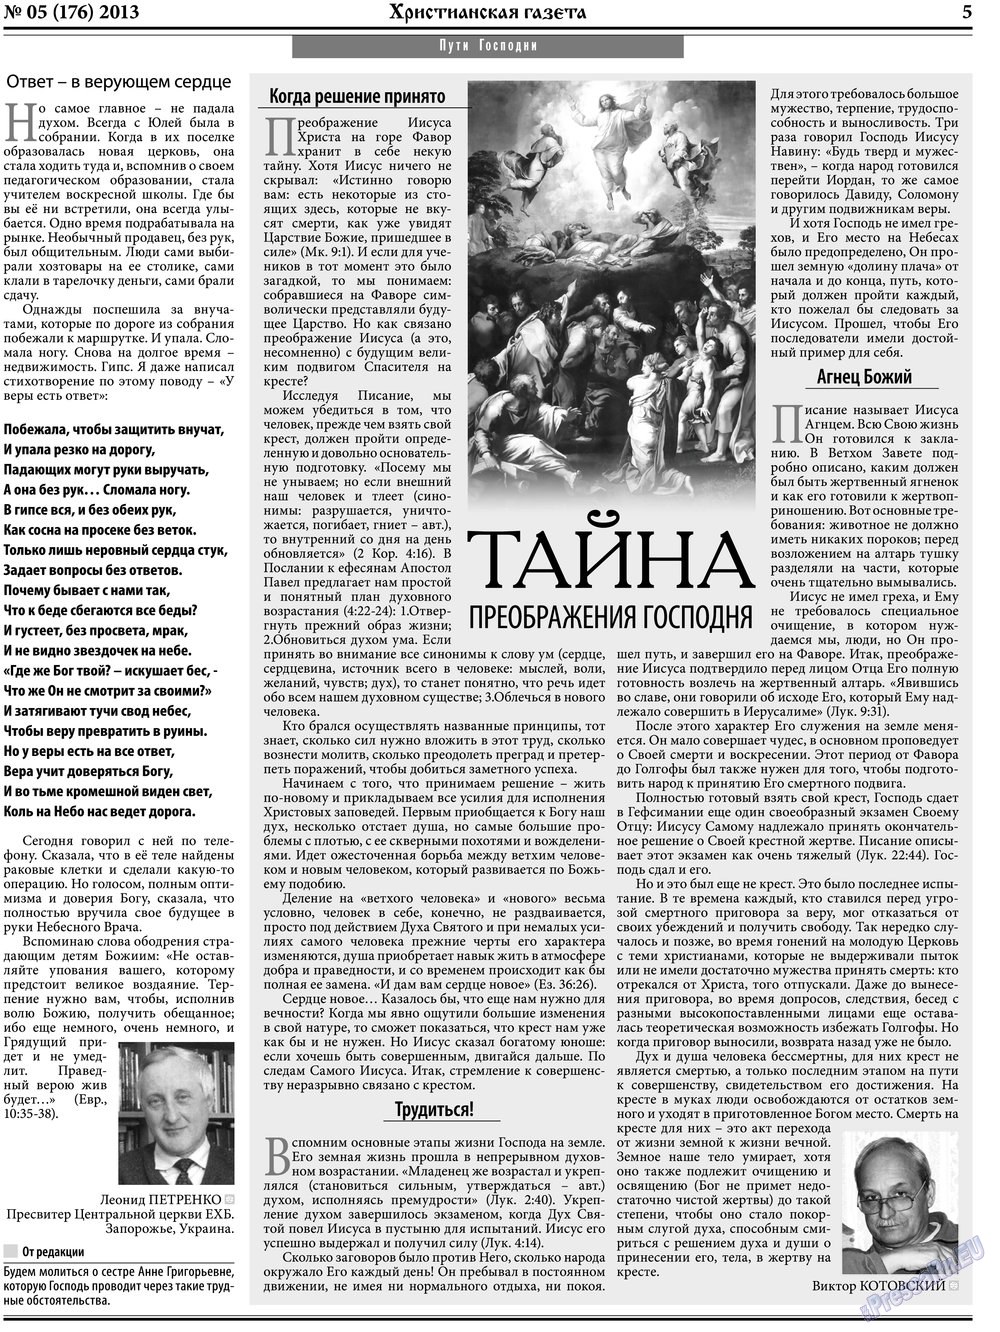 Христианская газета, газета. 2013 №5 стр.5